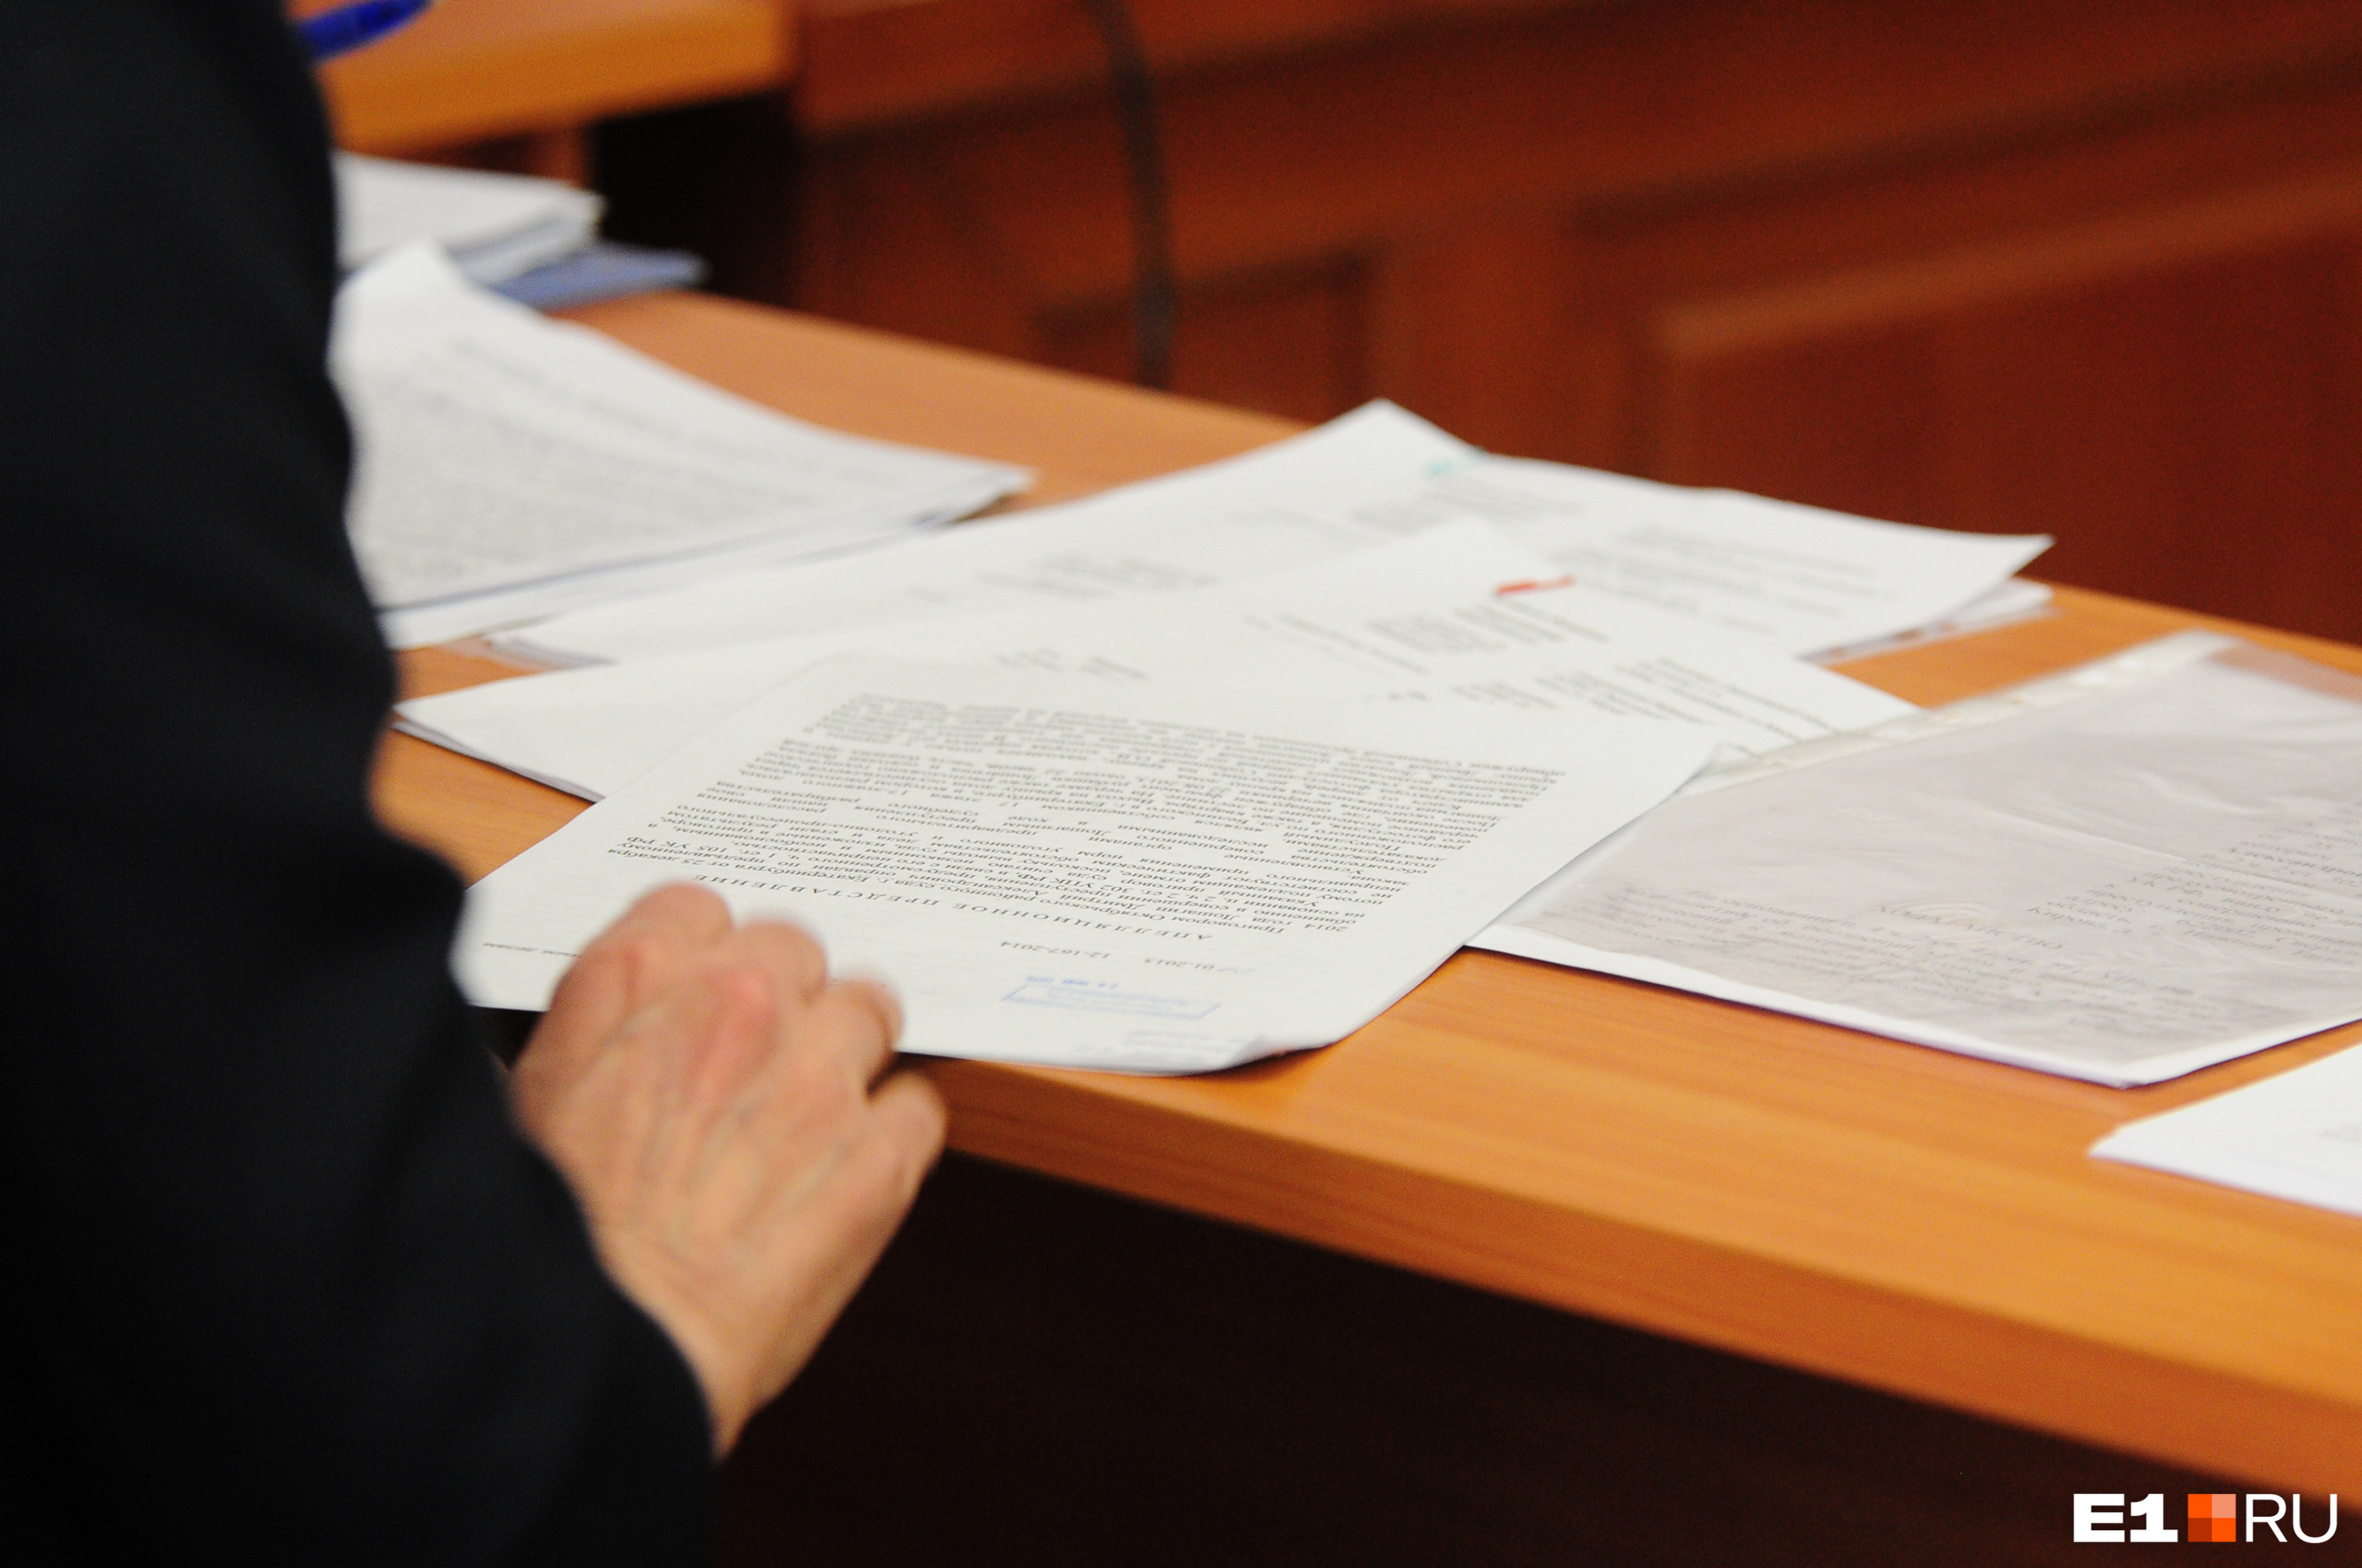 Экс-глава села в Забайкалье обвинила нынешнюю администрацию в подделке подписи